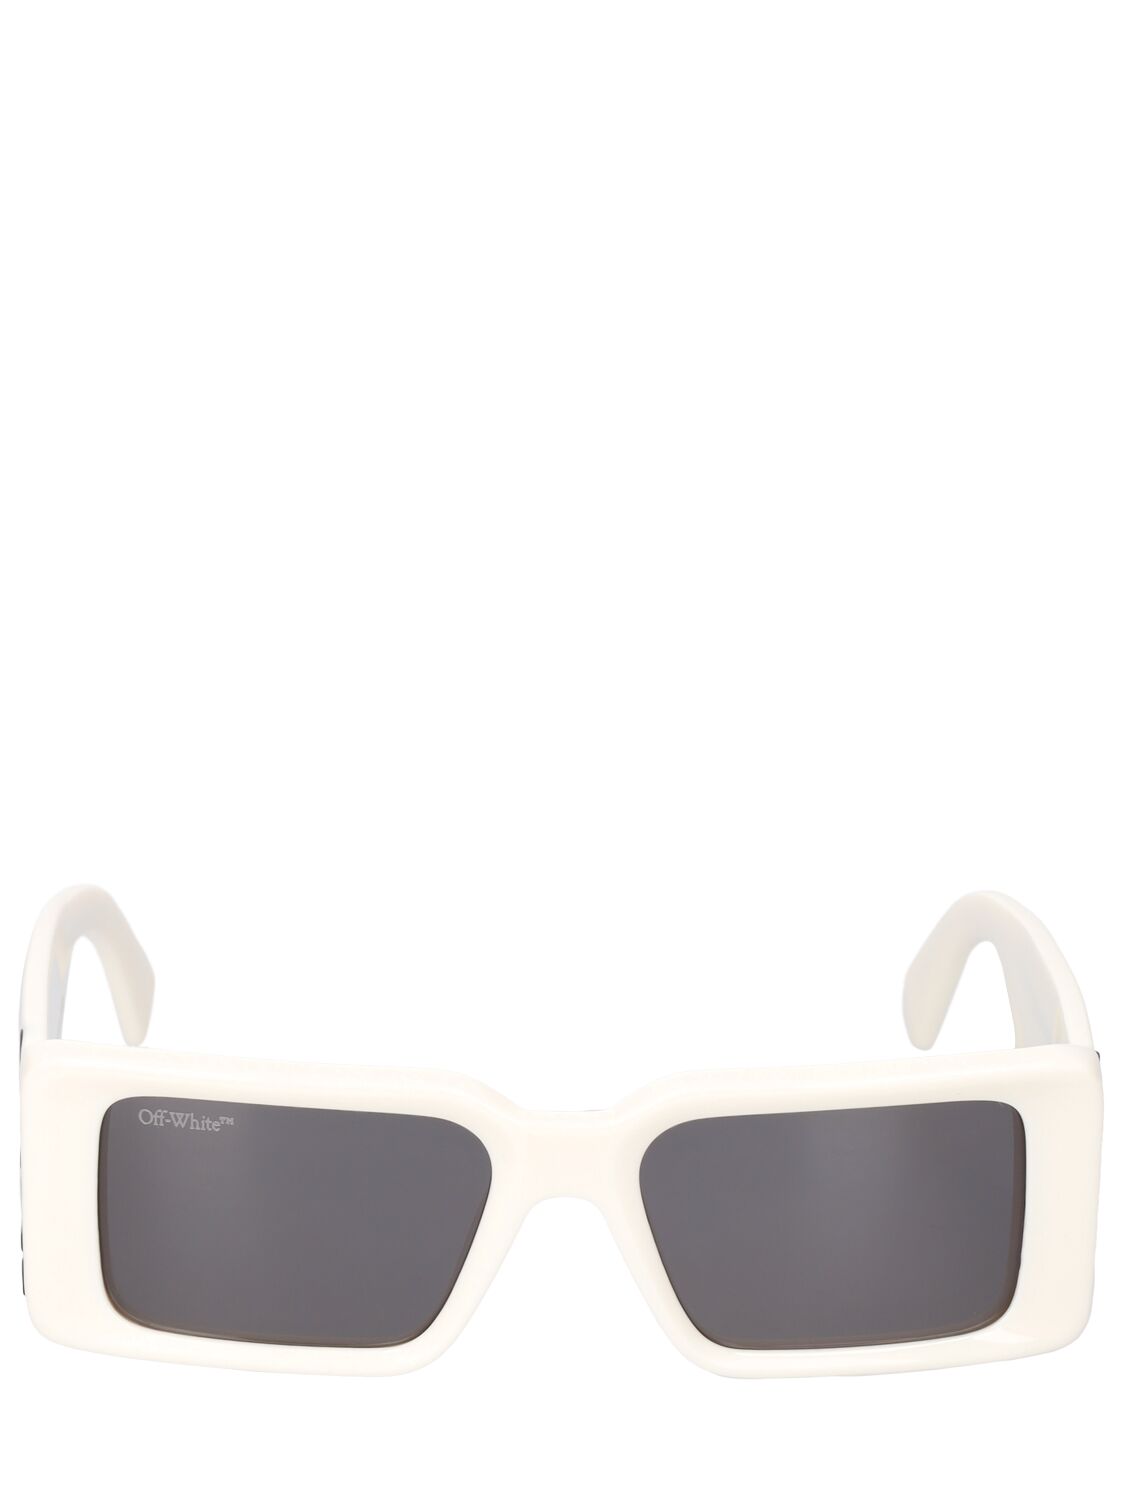 Image of Milano Acetate Sunglasses